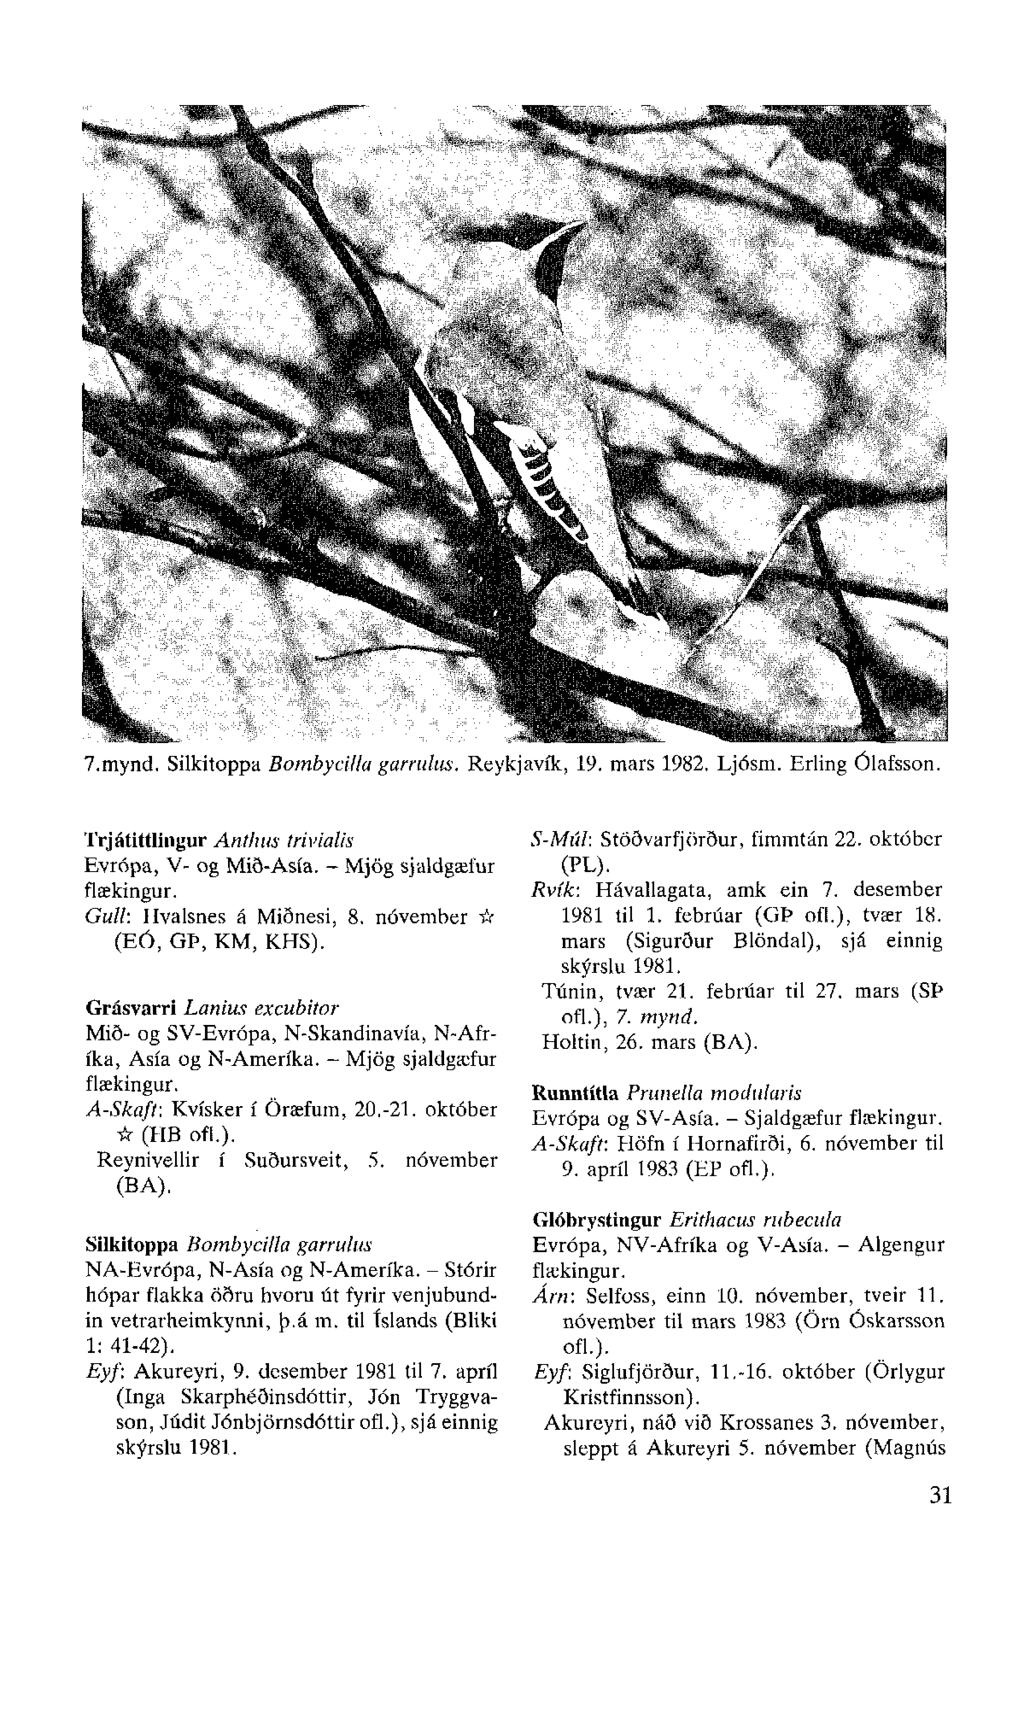 7.mynd. Silkitoppa Bombycilla garrulus. Reykjavík, 19. mars 1982. Ljósm. Erling Ólafsson. Trjátittlingur Anthus trivialis Evrópa, V- og Mið-Asía. - Mjög sjaldgæfur flækingur.